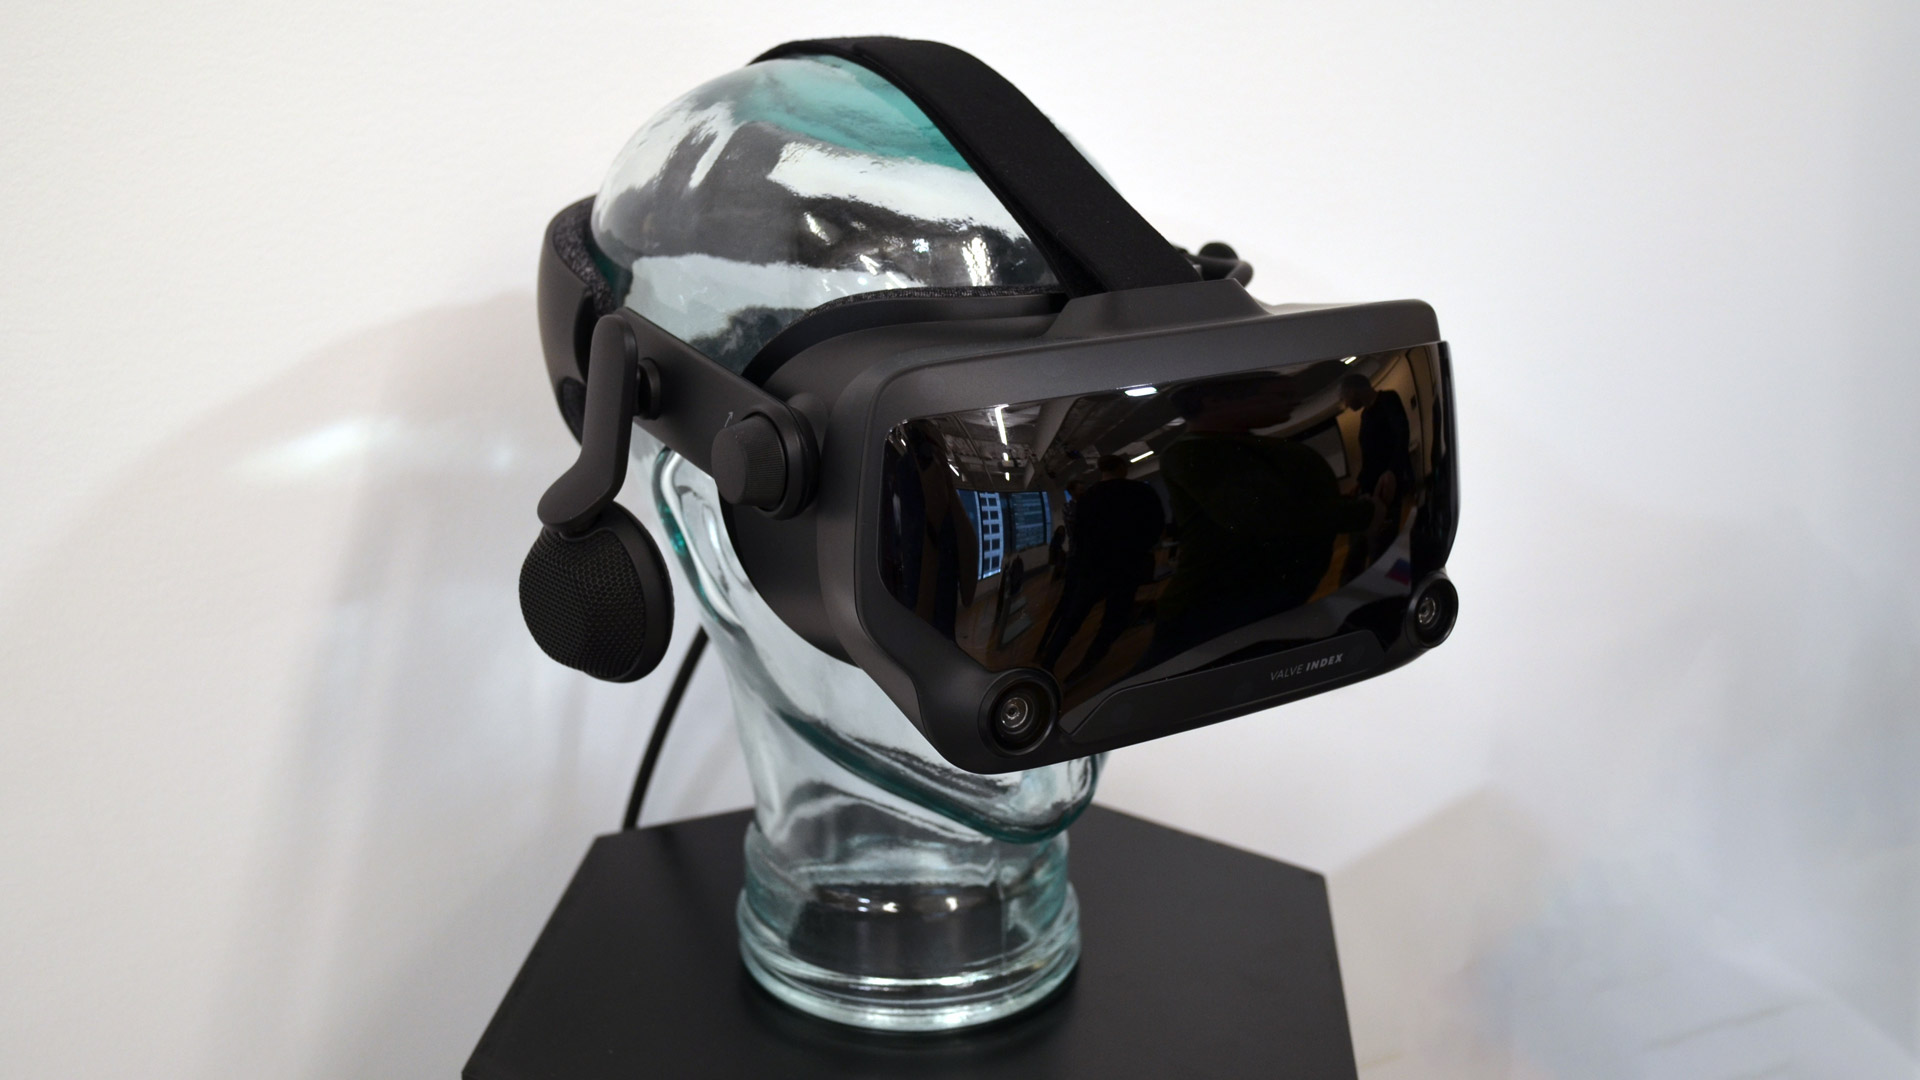 Valve Index VR Sets an Impressive New Bar for VR Fidelity